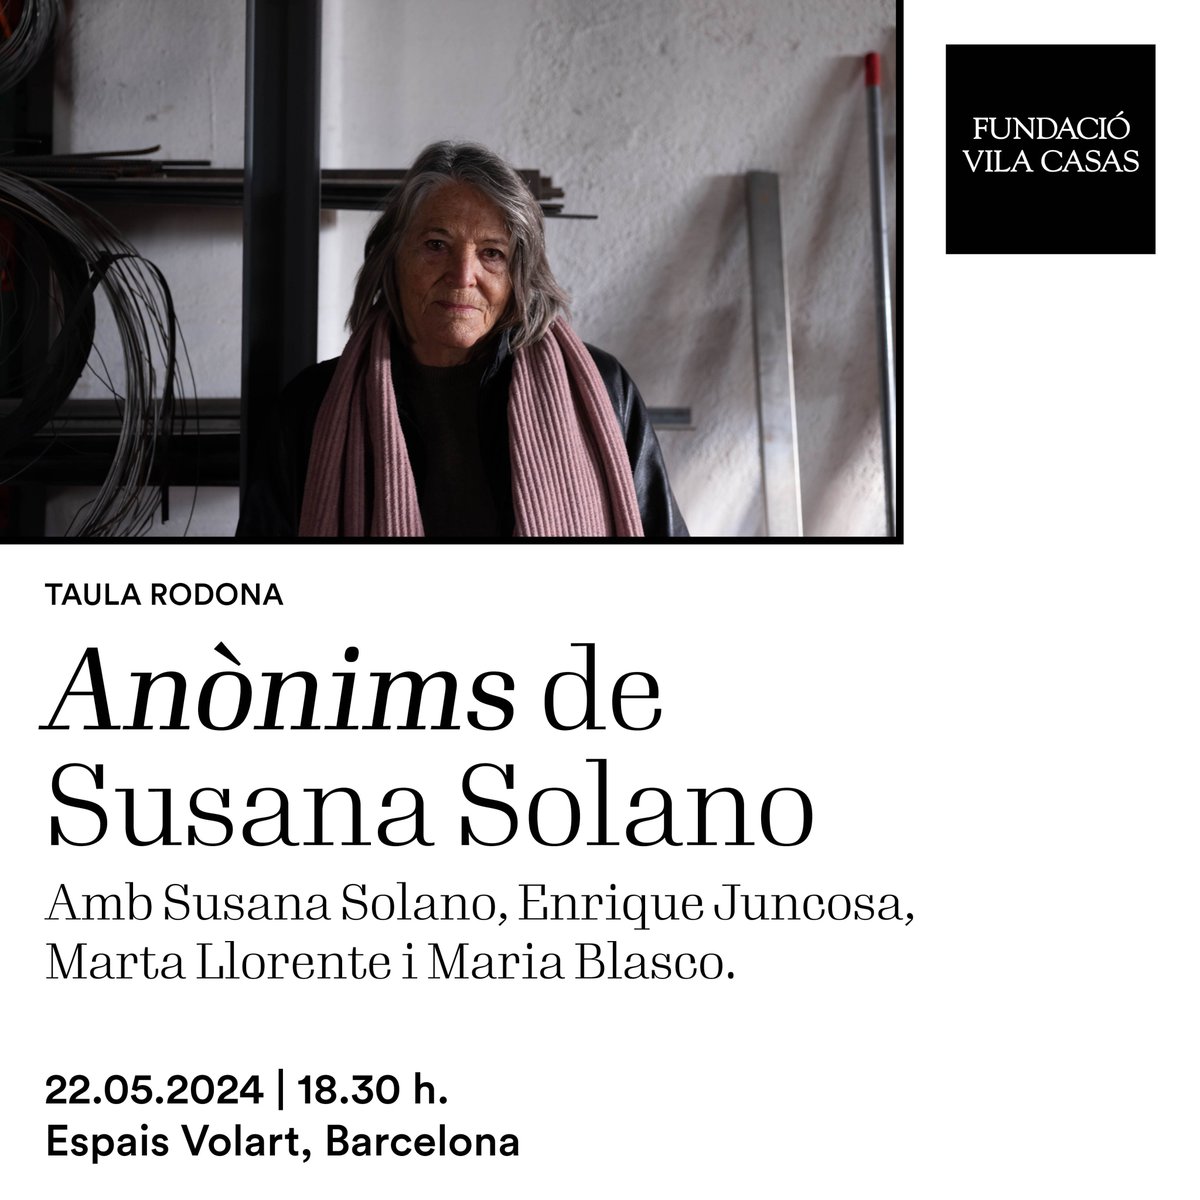 (1/2) Amb motiu de l’exposició “Anònims” de l’artista Susana Solano hem organitzat una taula rodona en la que es parlarà de la mostra, del catàleg i d’altres temes relacionats amb l’artista i la seva obra. + info: bit.ly/3K5Zs84